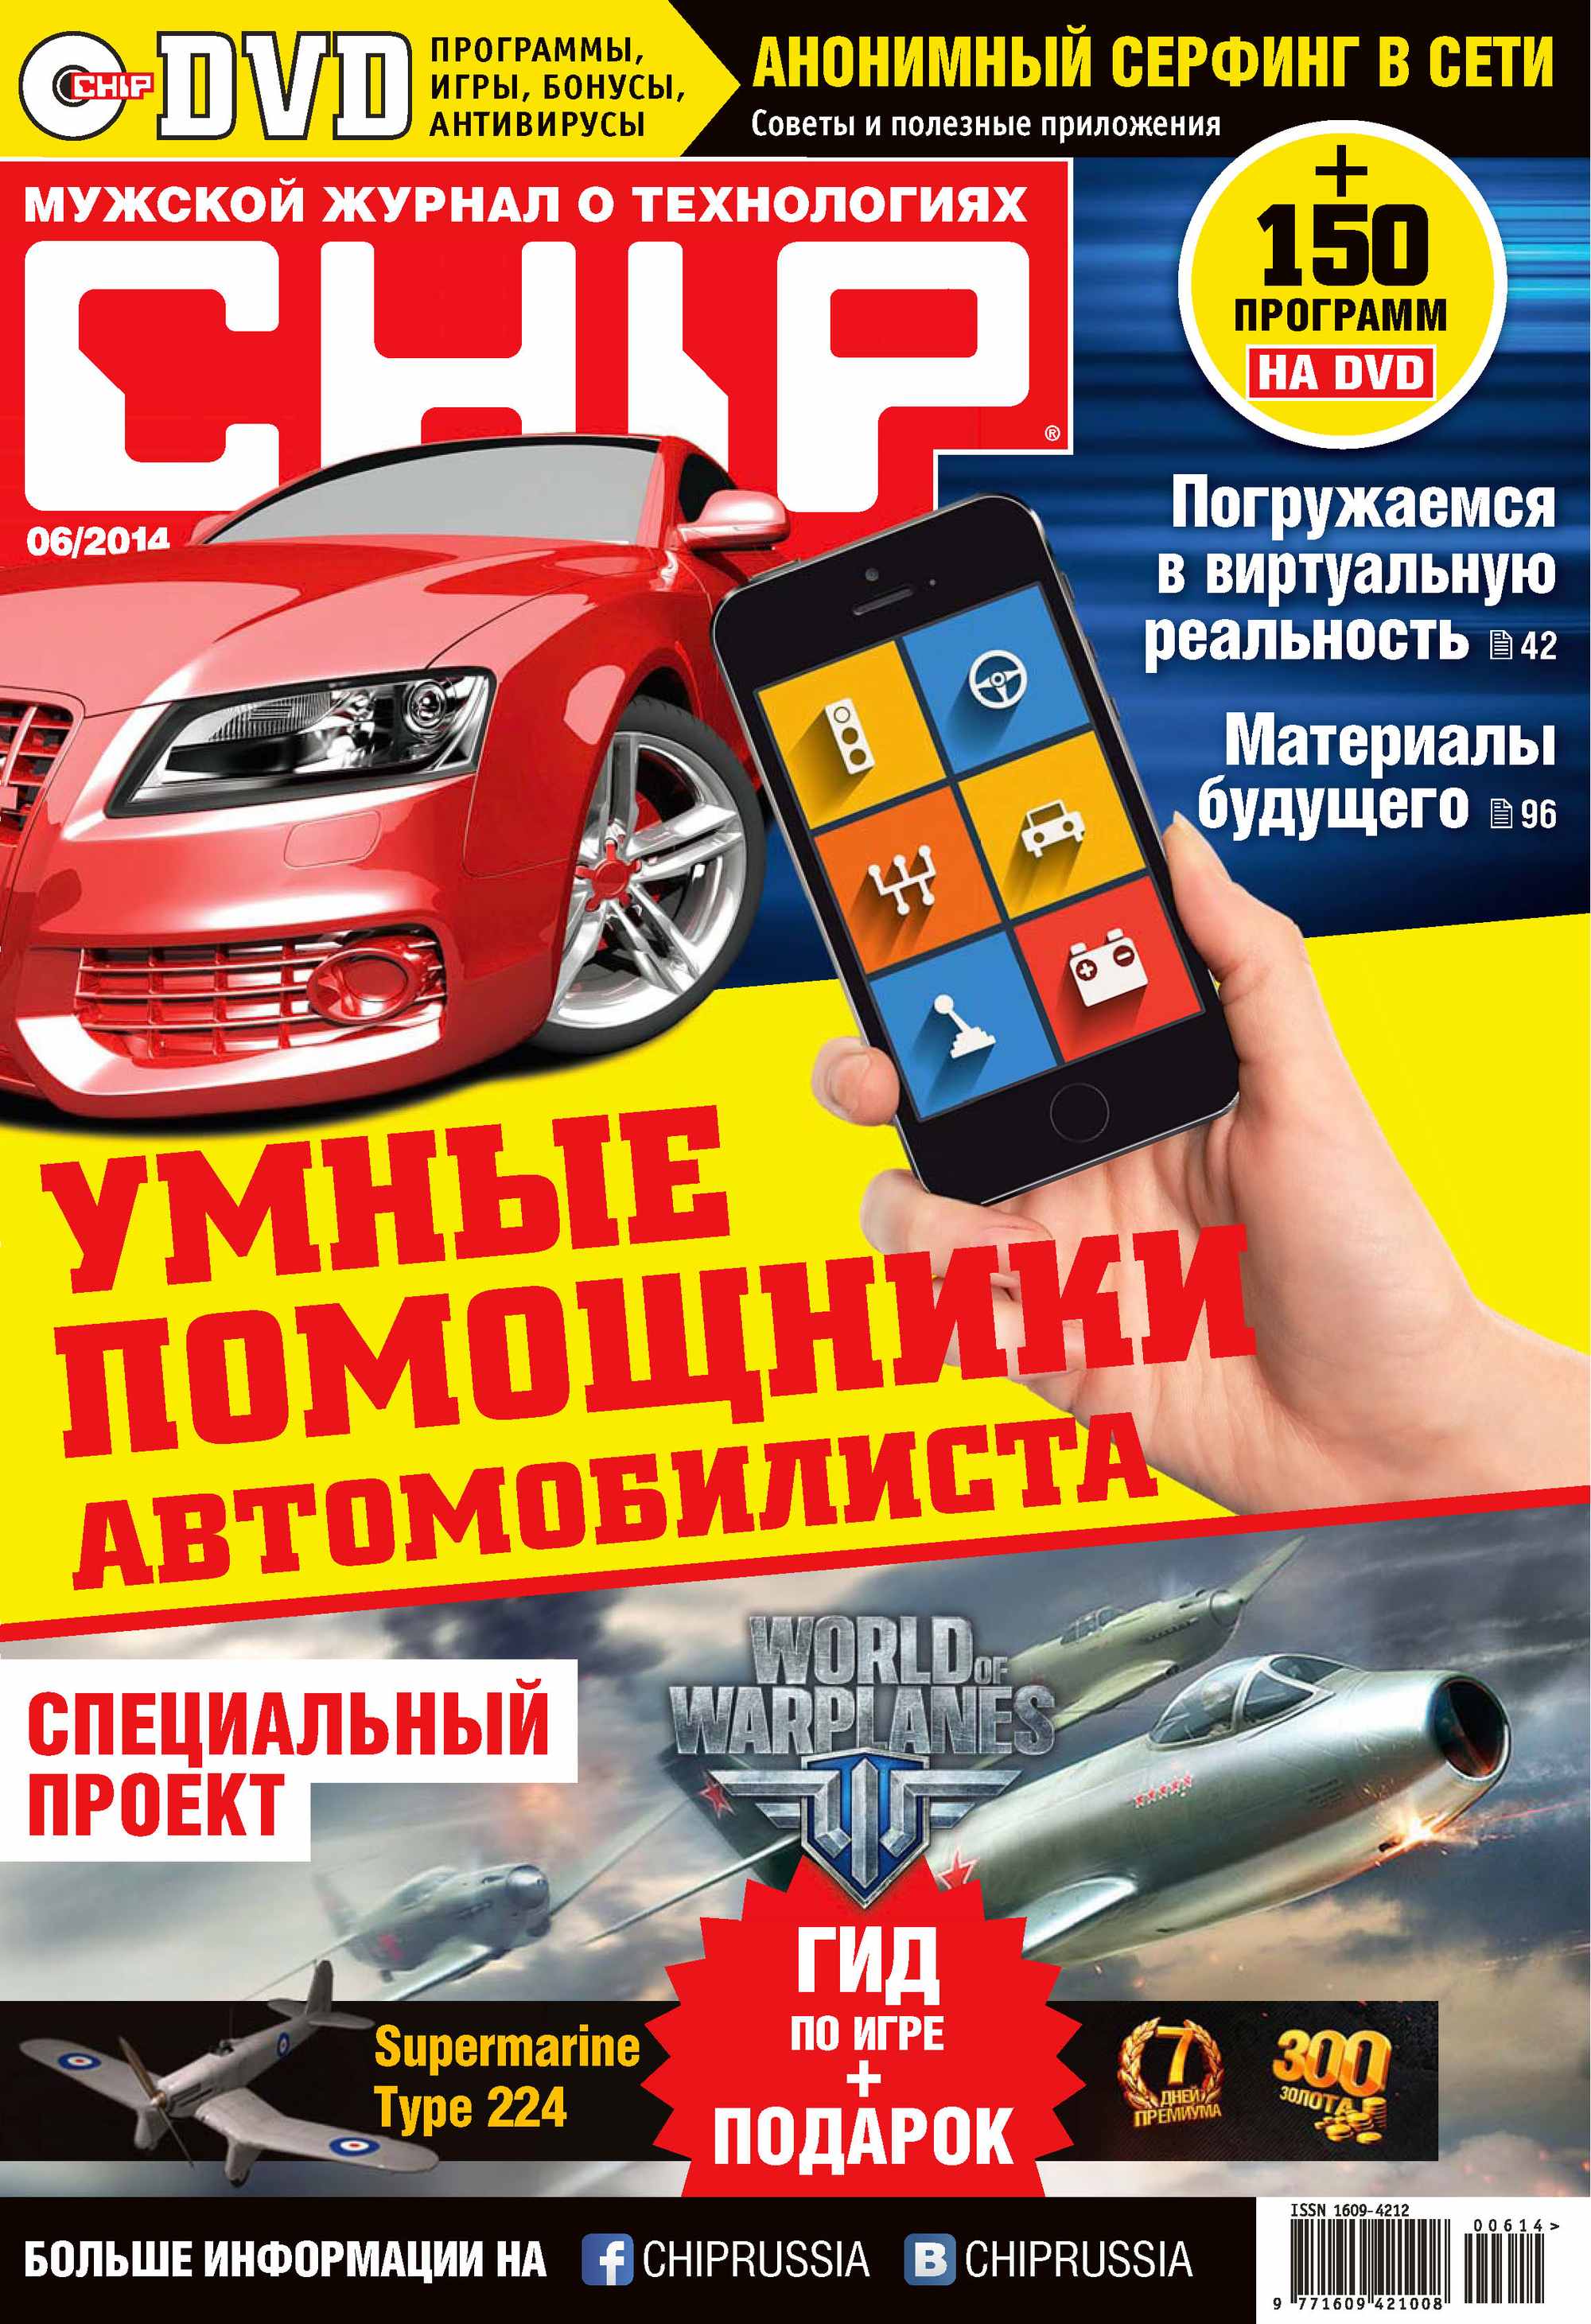 CHIP.Журнал информационных технологий. №06/2014